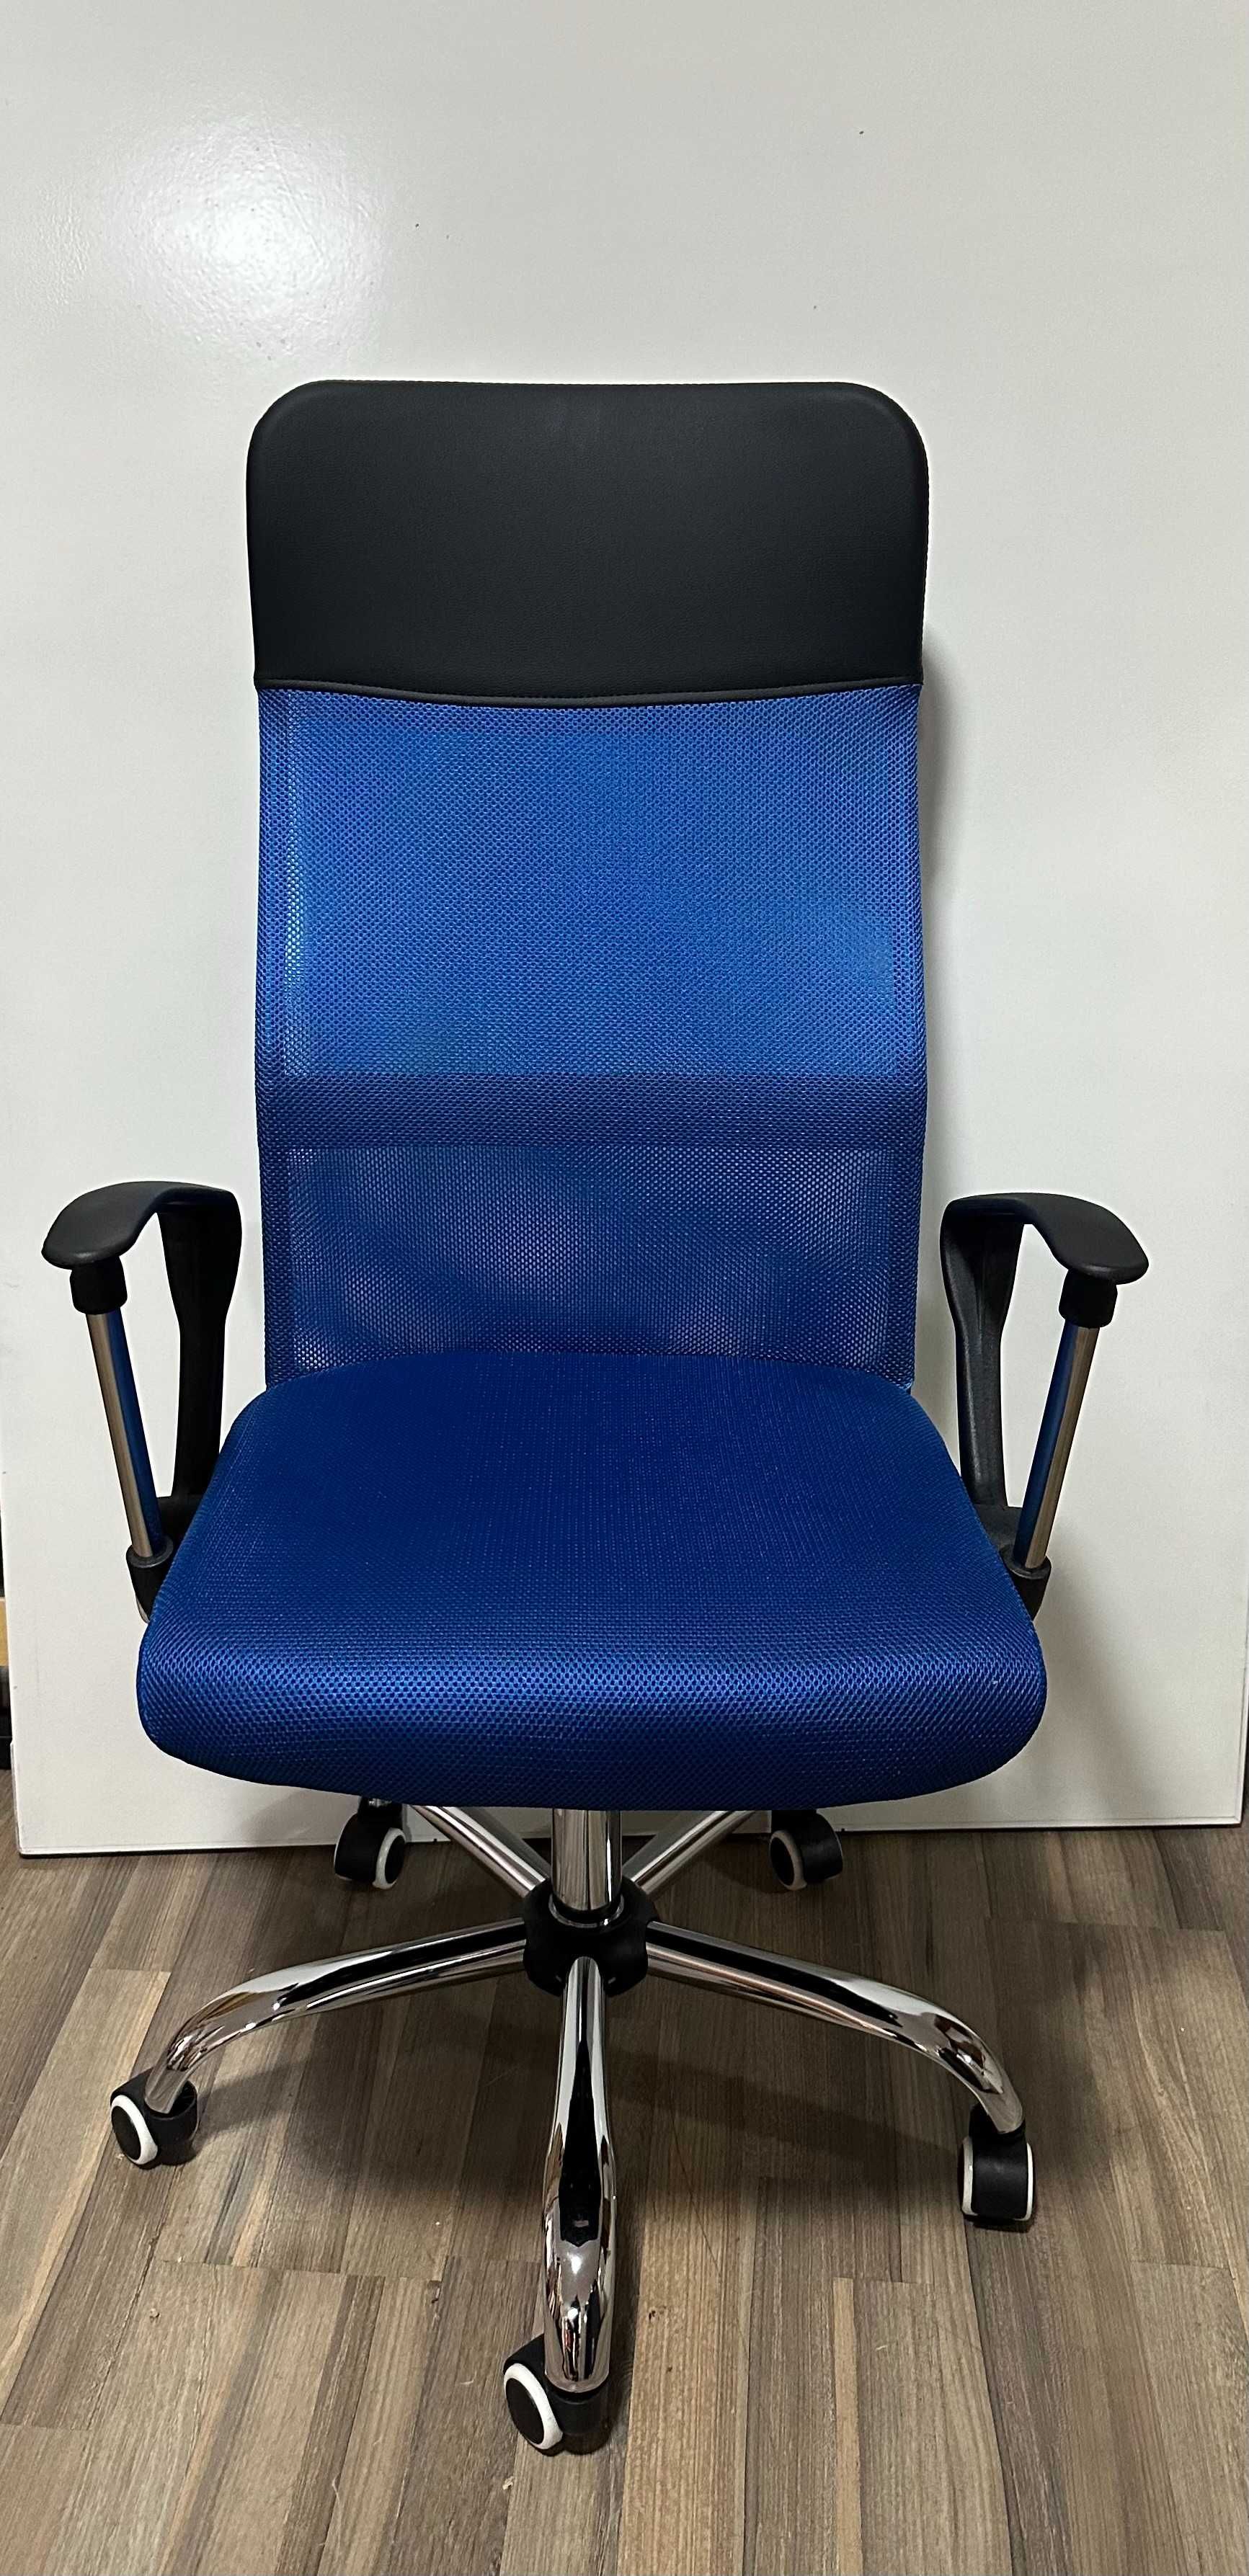 Produs Nou; Scaun Birou ergonomic; Scaun microgrila albastru; 50 buc